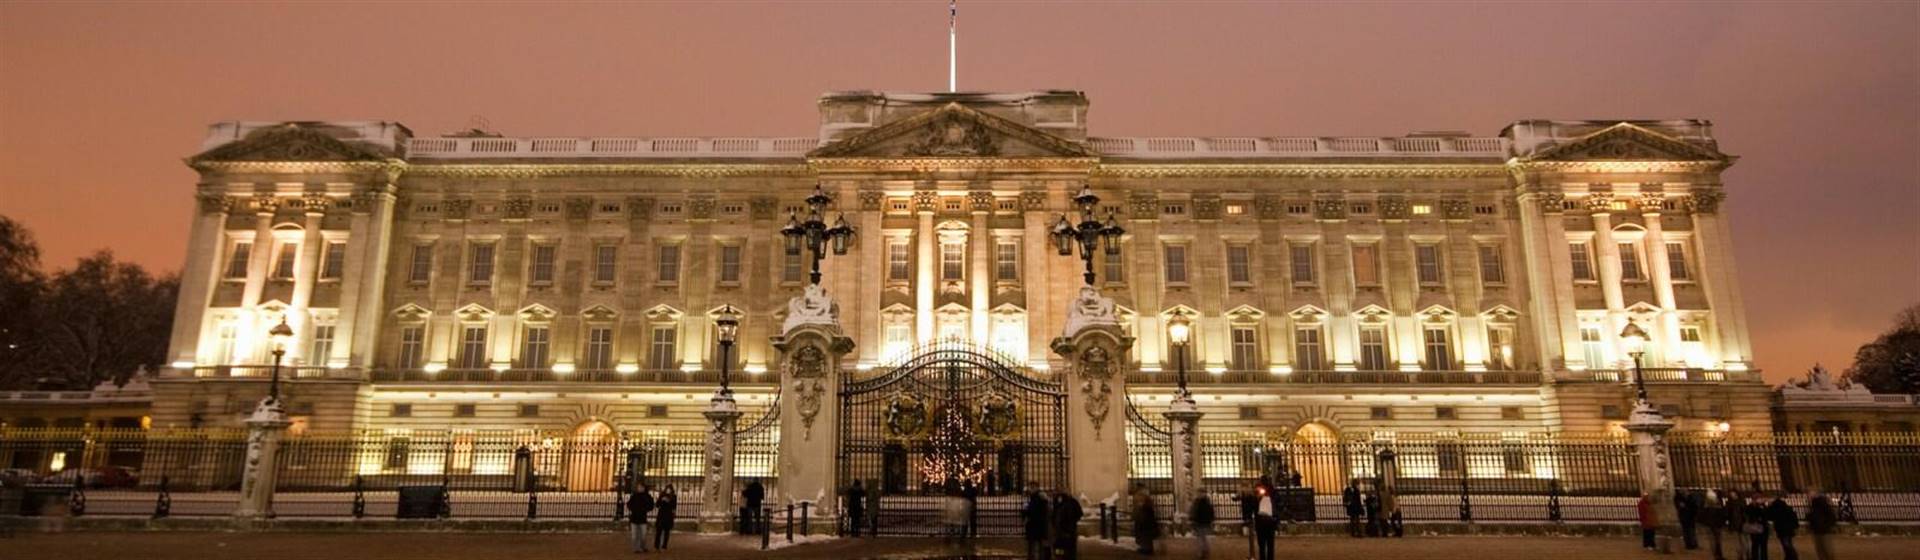 A Royal Tour at Buckingham Palace